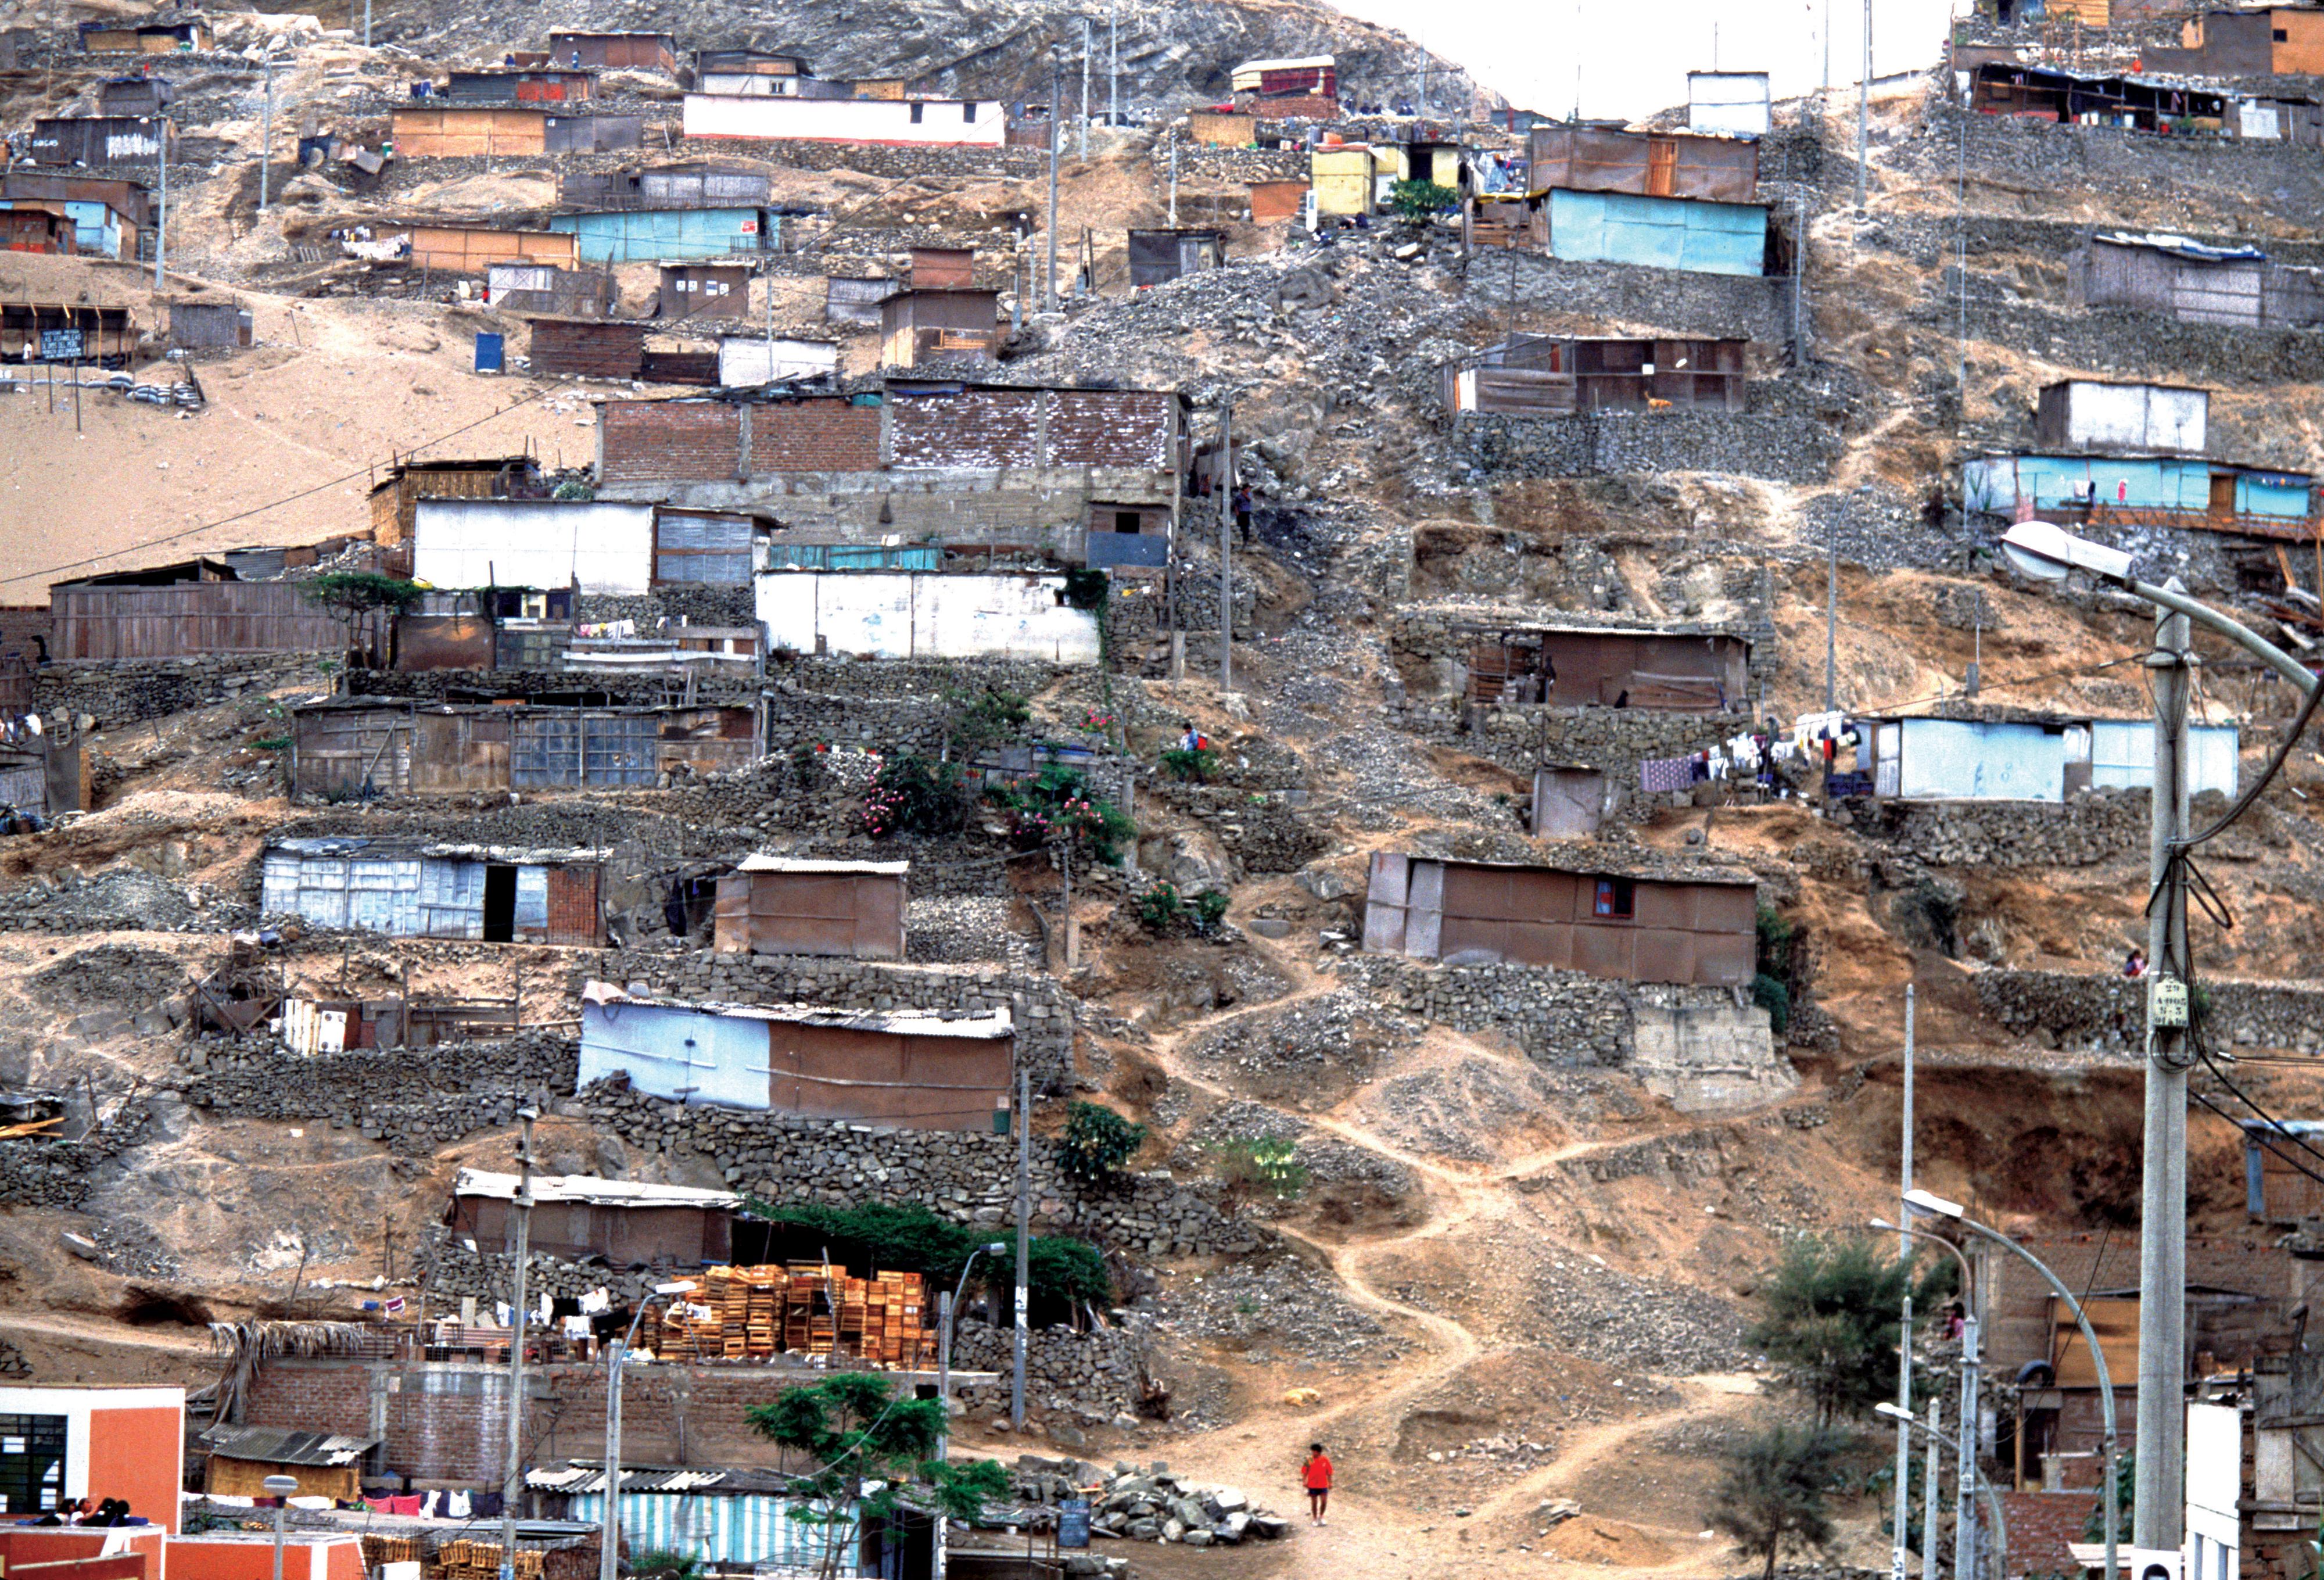 A shantytown in Lima